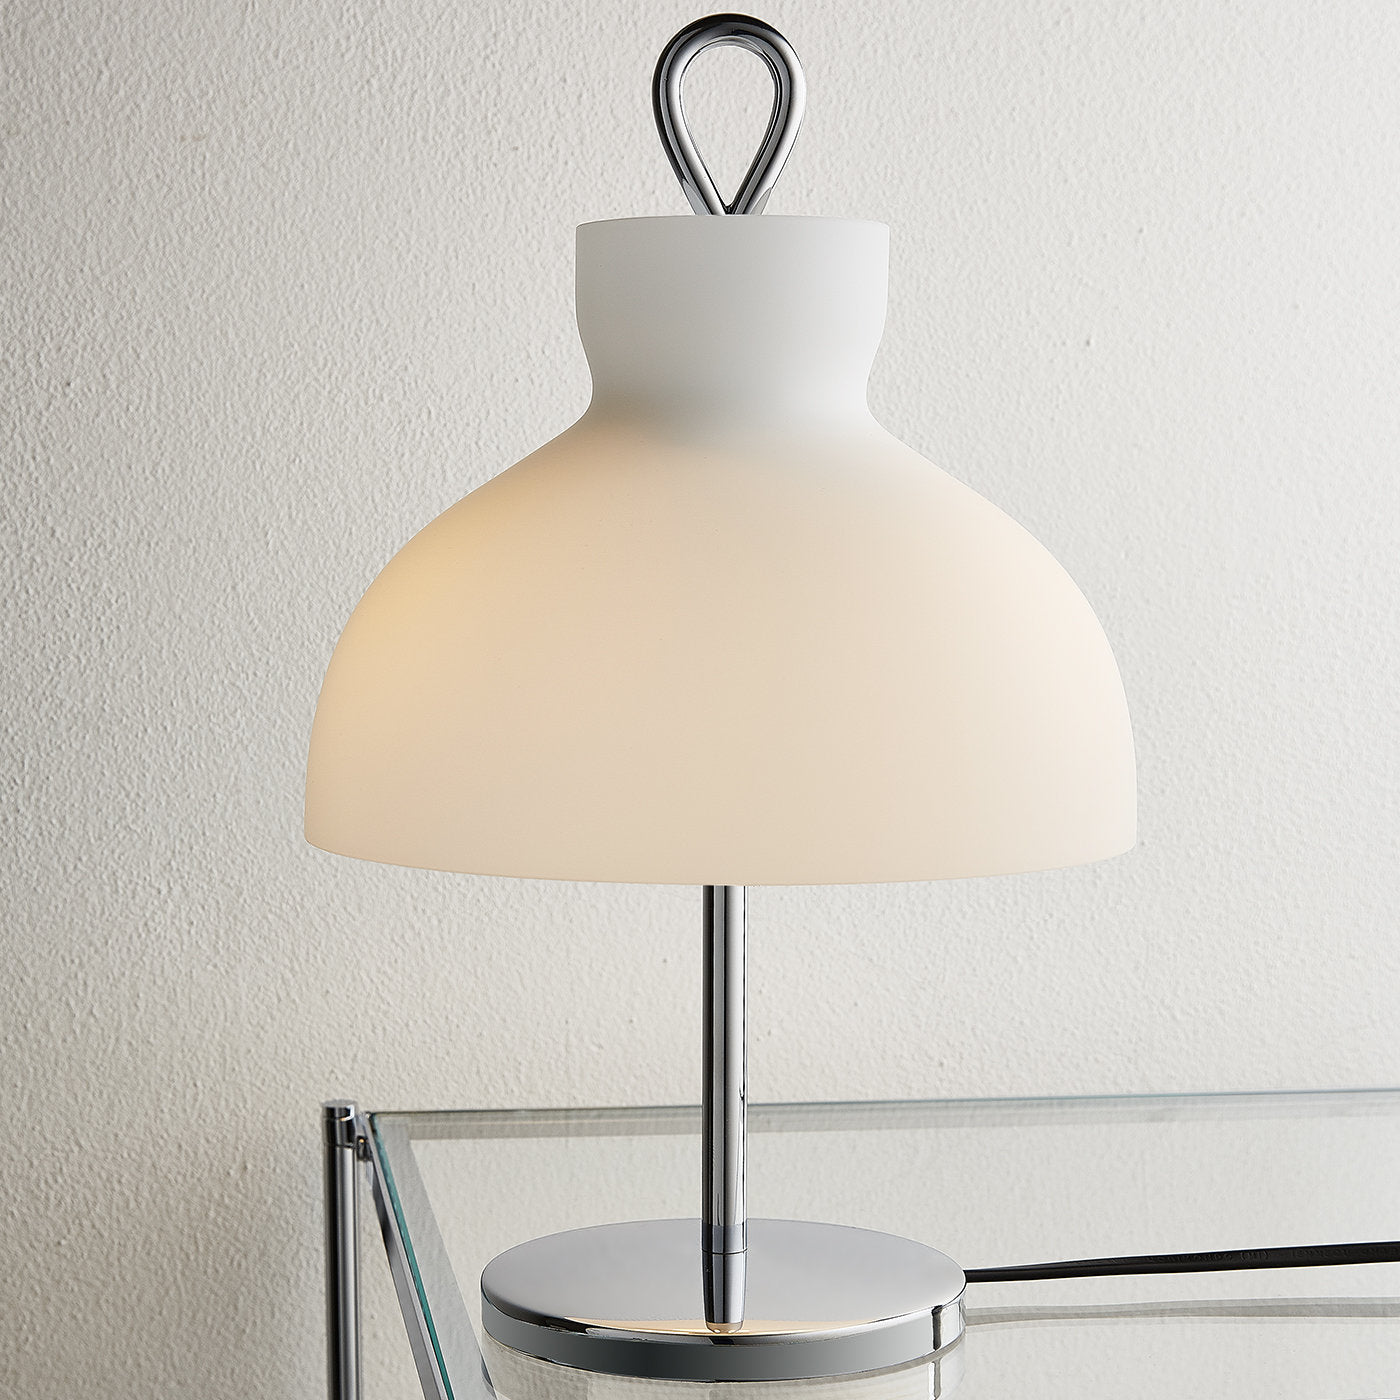 Arenzano Bassa Chrome Table Lamp by Ignazio Gardella - Alternative view 1